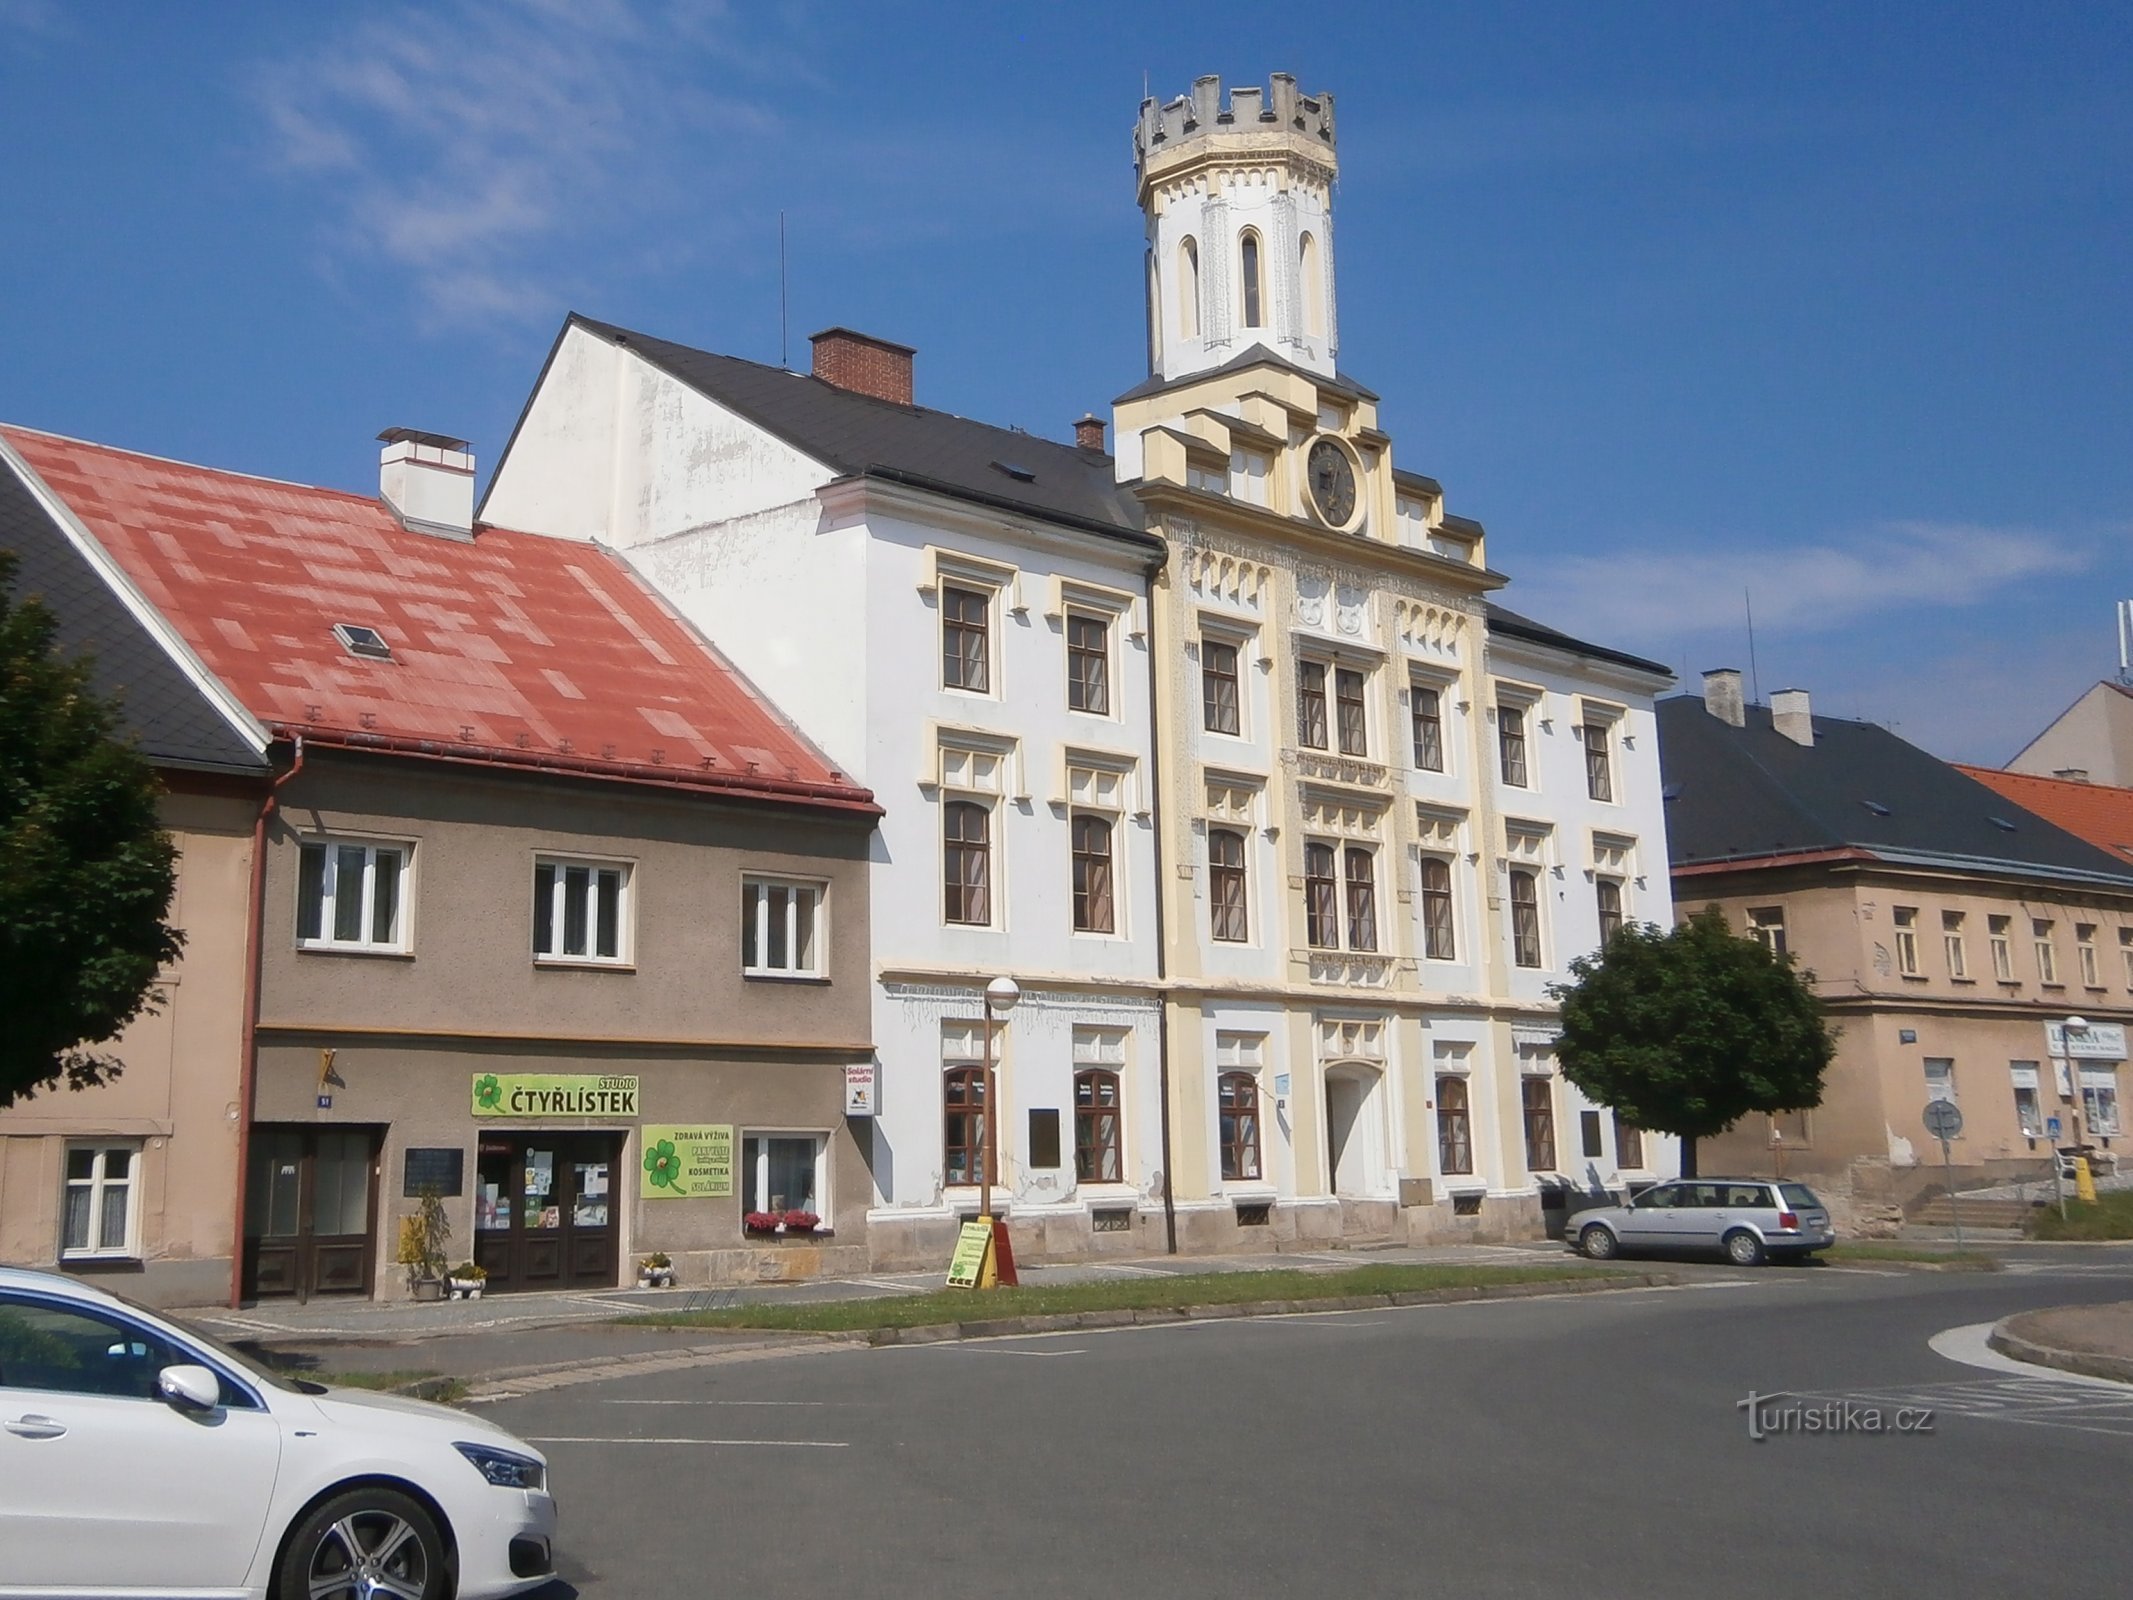 旧市政厅 1 号 (Česká Skalice)